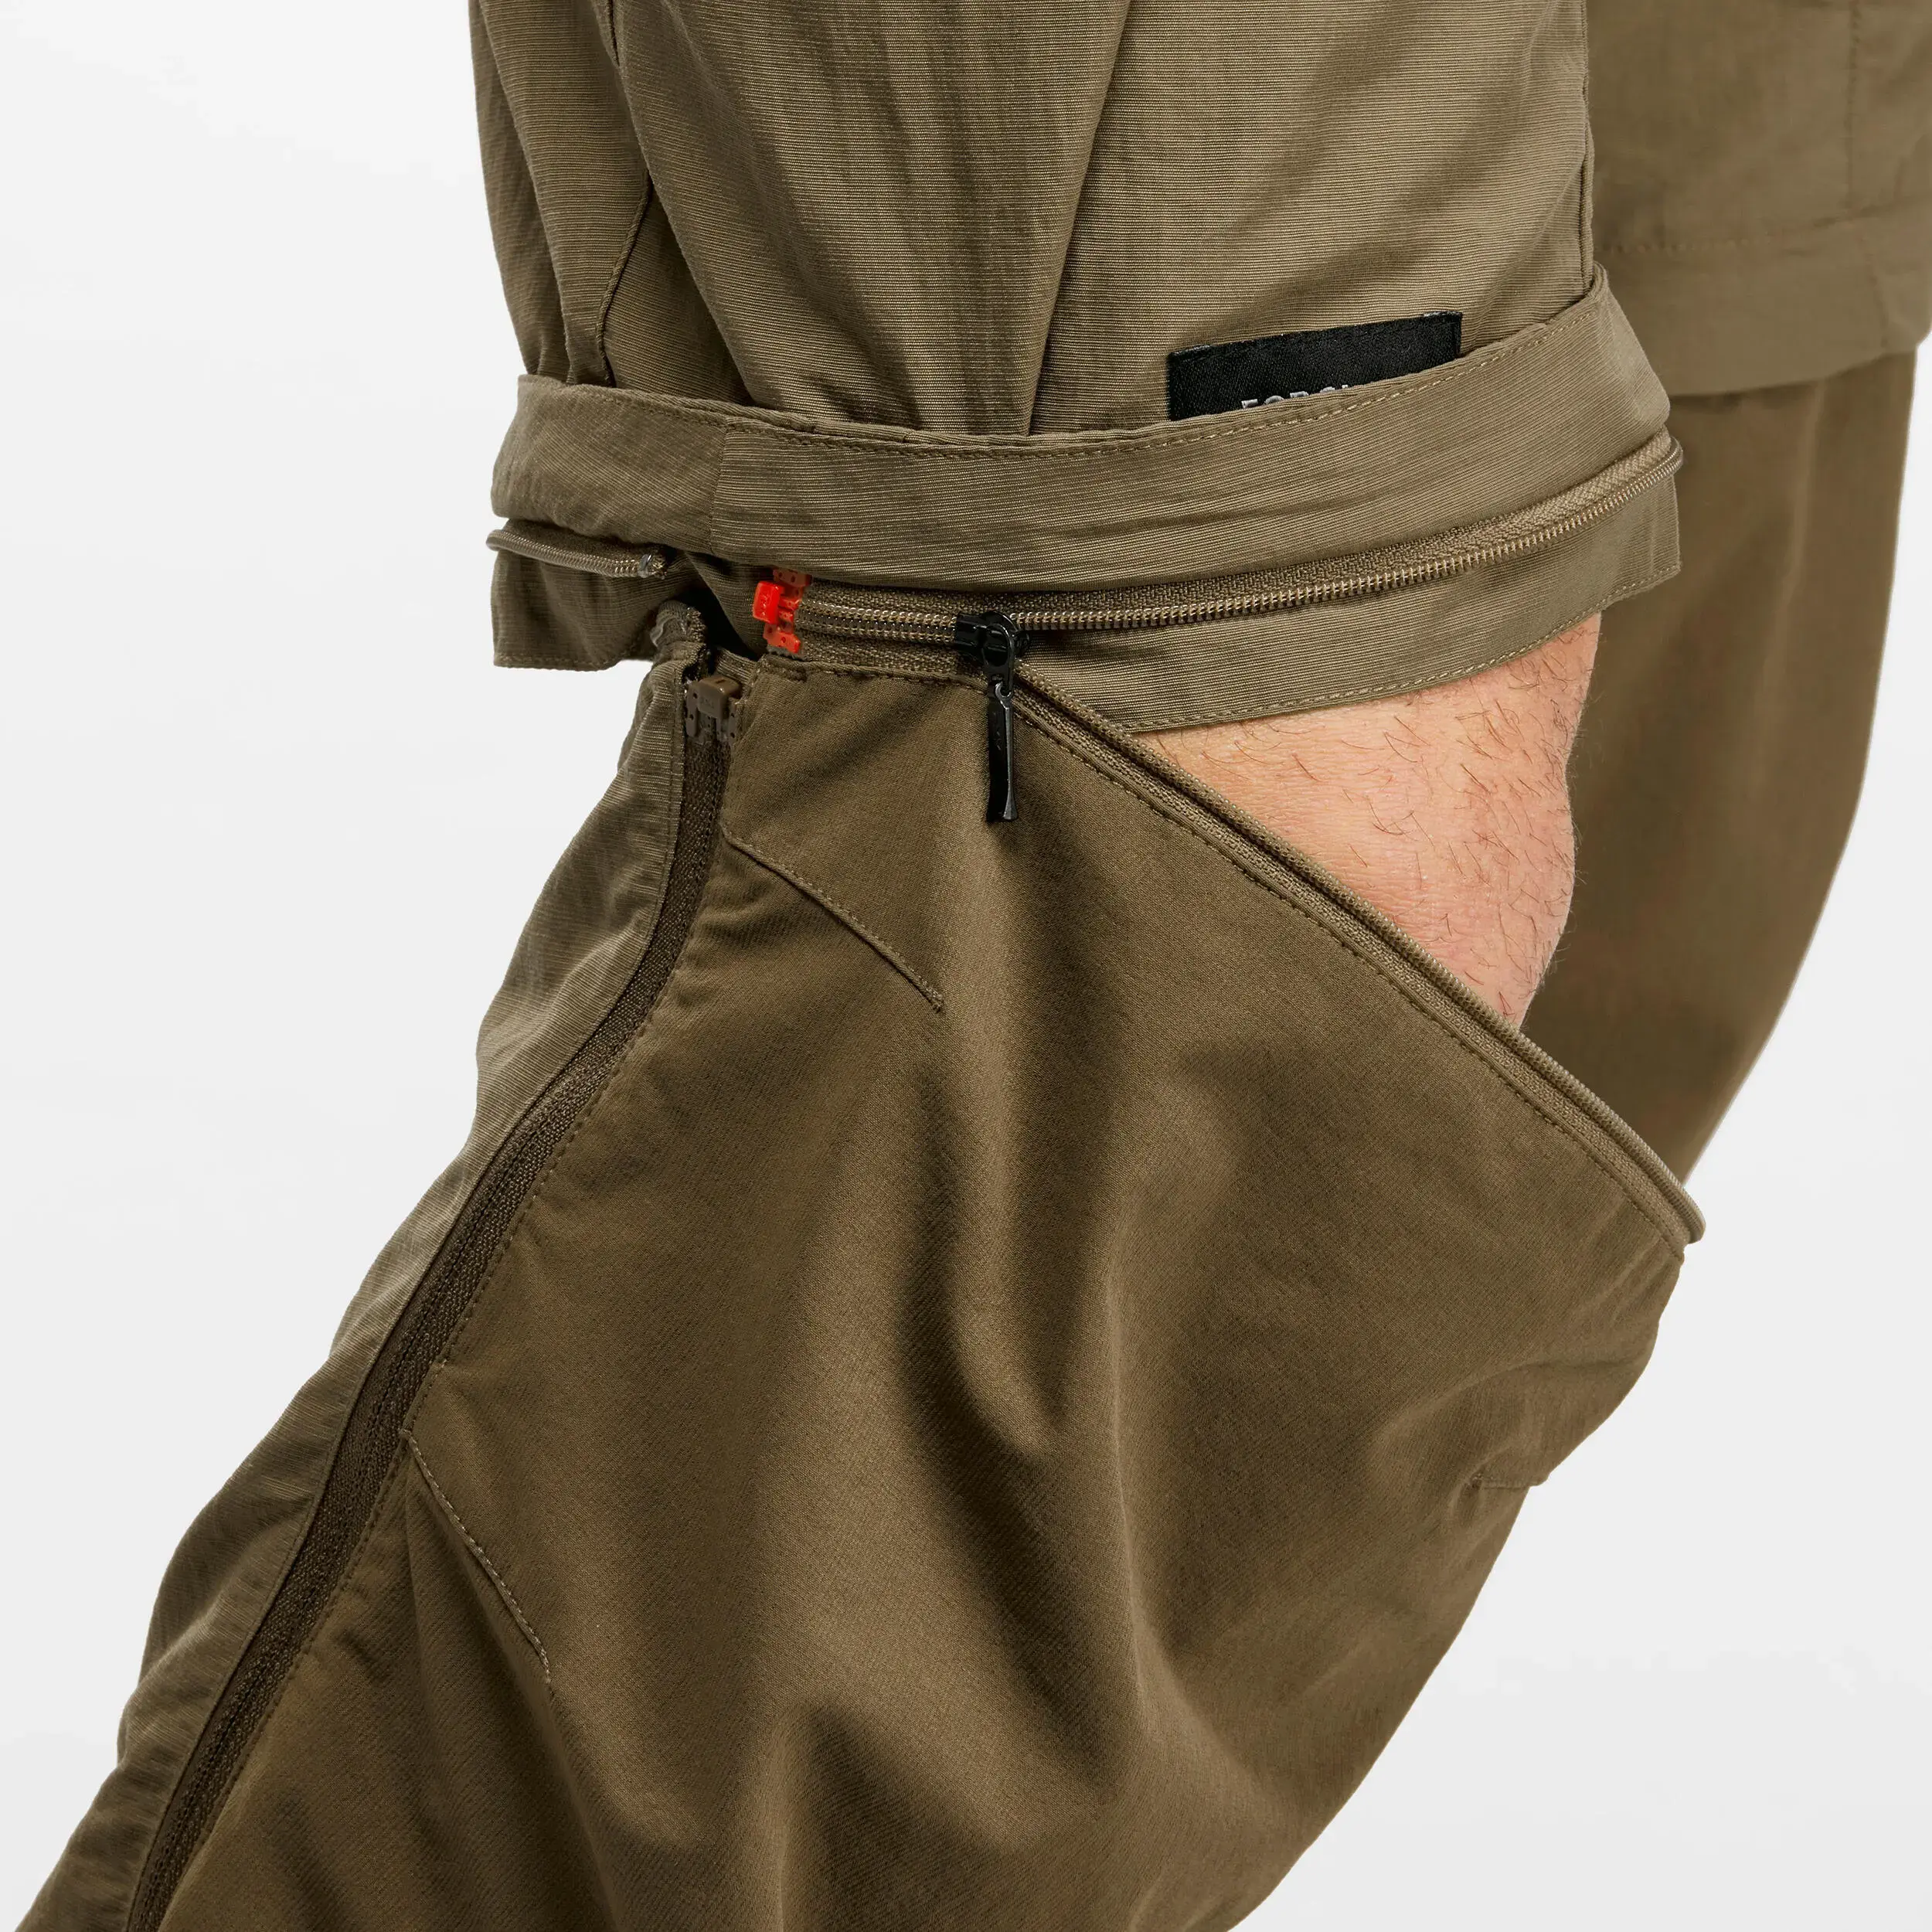 pantalon-modulable-2-en-1-et-resistant-de-trek-mt500-homme-_3_.webp